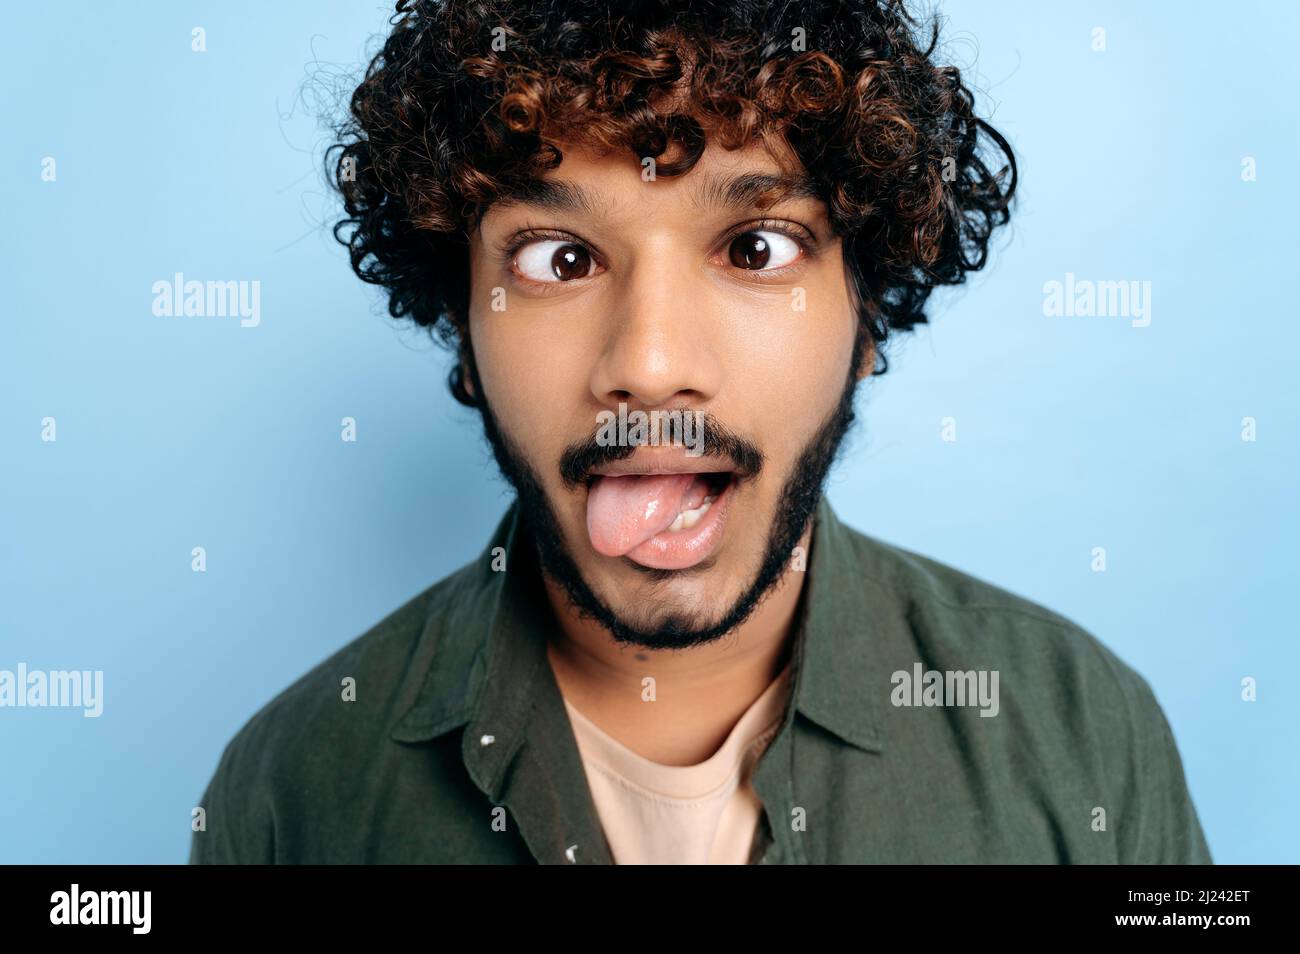 Nahaufnahme des indischen oder arabischen lockigen lustigen Typen, der ein lustiges Gesicht machte, die Zunge heraus, seine Augen schielte, auf isoliertem blauem Hintergrund stehend. Grimassen, die sich herumtäuschen Stockfoto